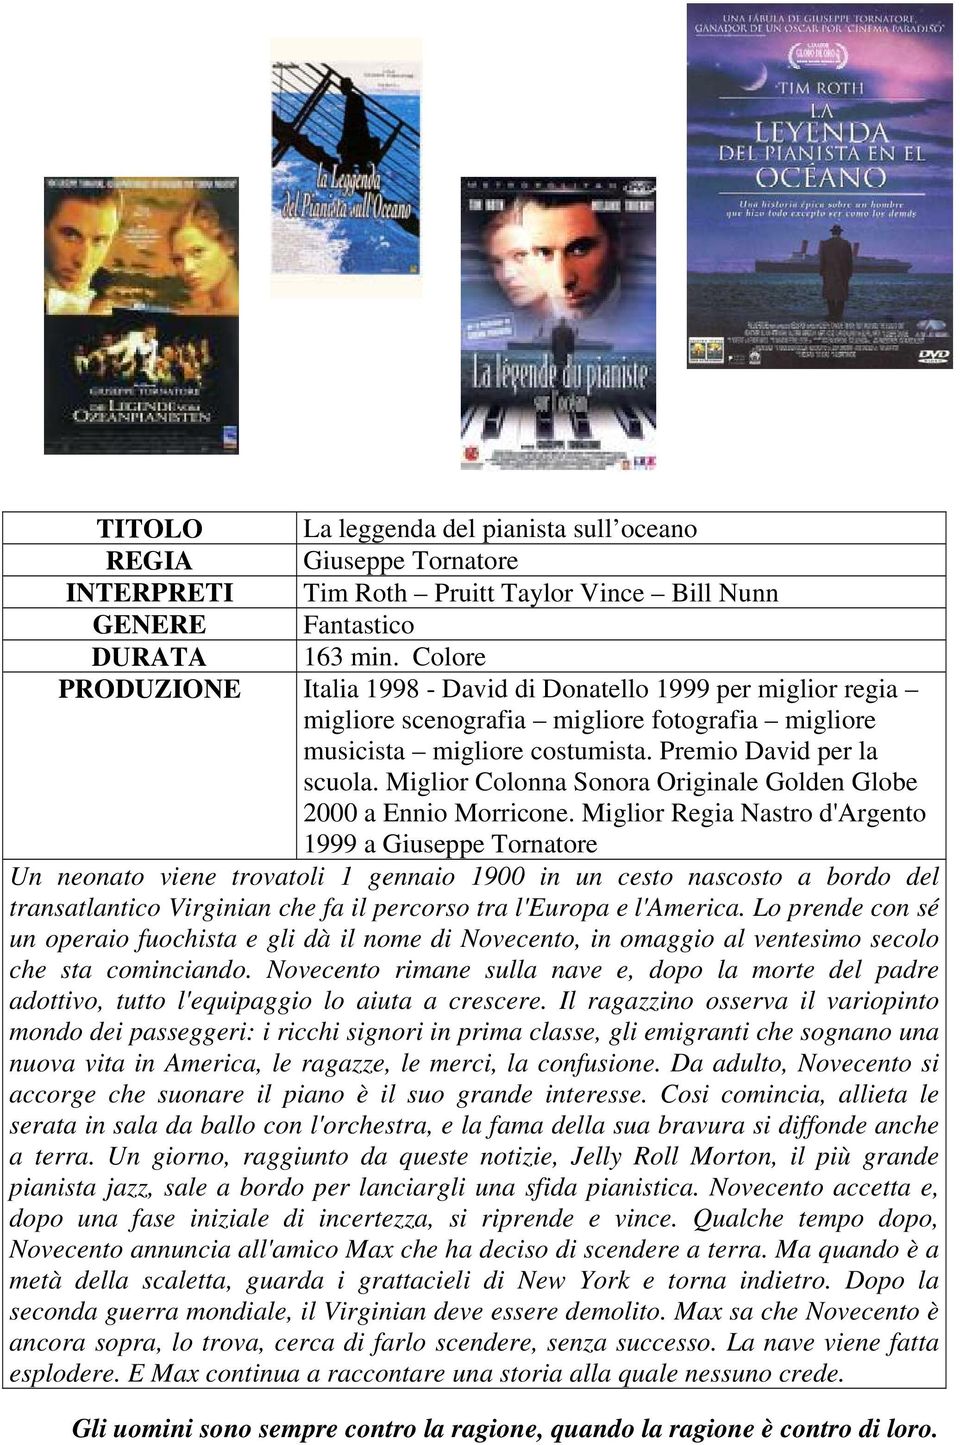 Miglior Colonna Sonora Originale Golden Globe 2000 a Ennio Morricone.